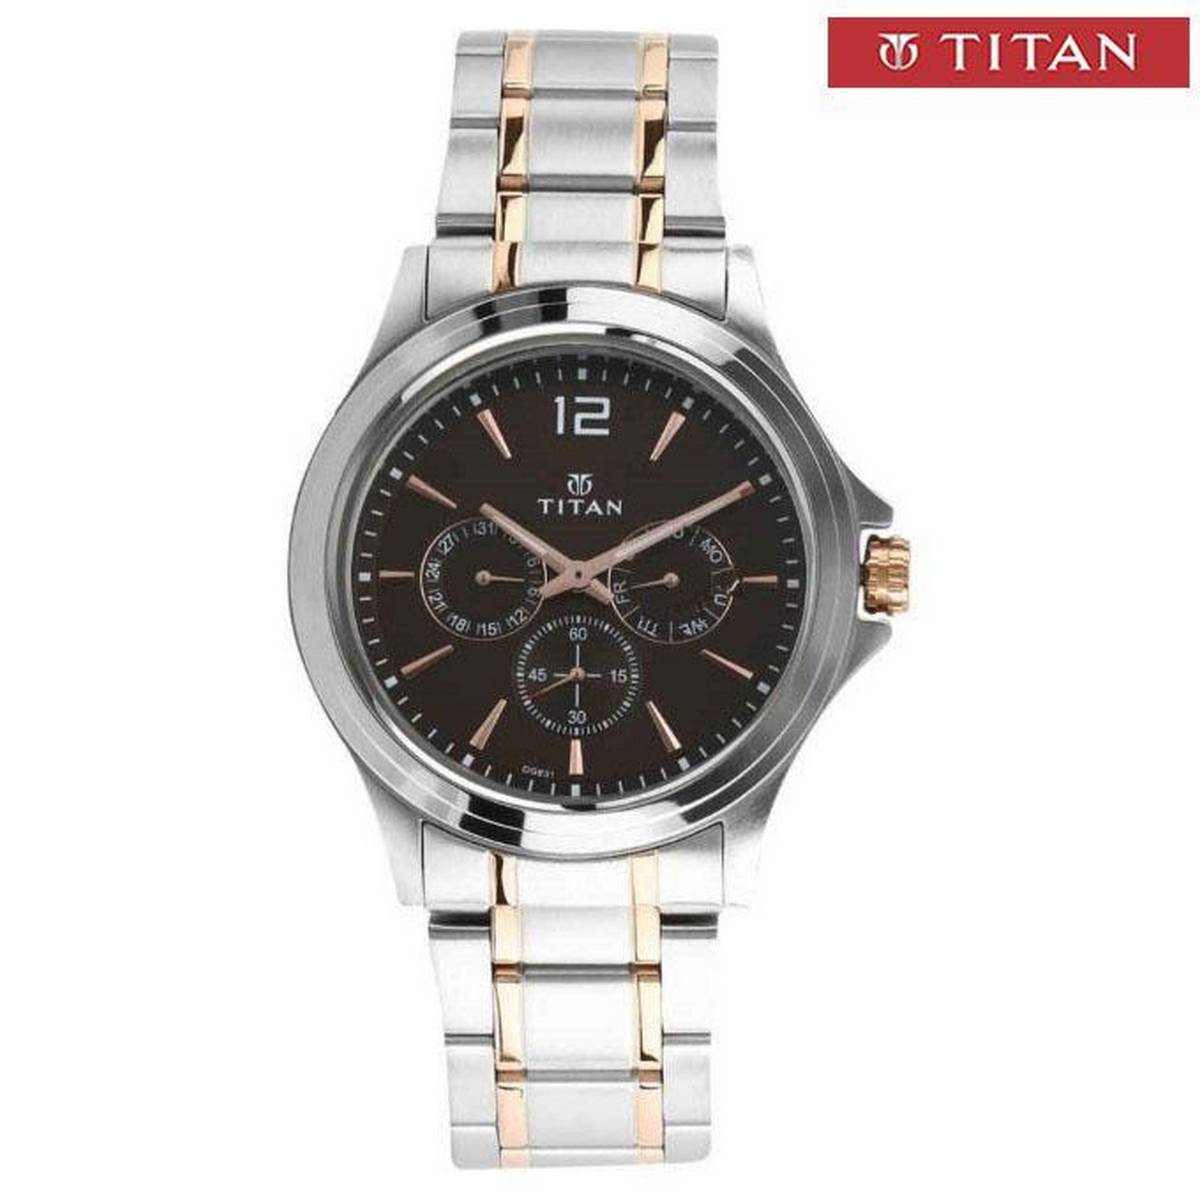 Titan 1698KM01 Black Dial Chronograph Watch For Men